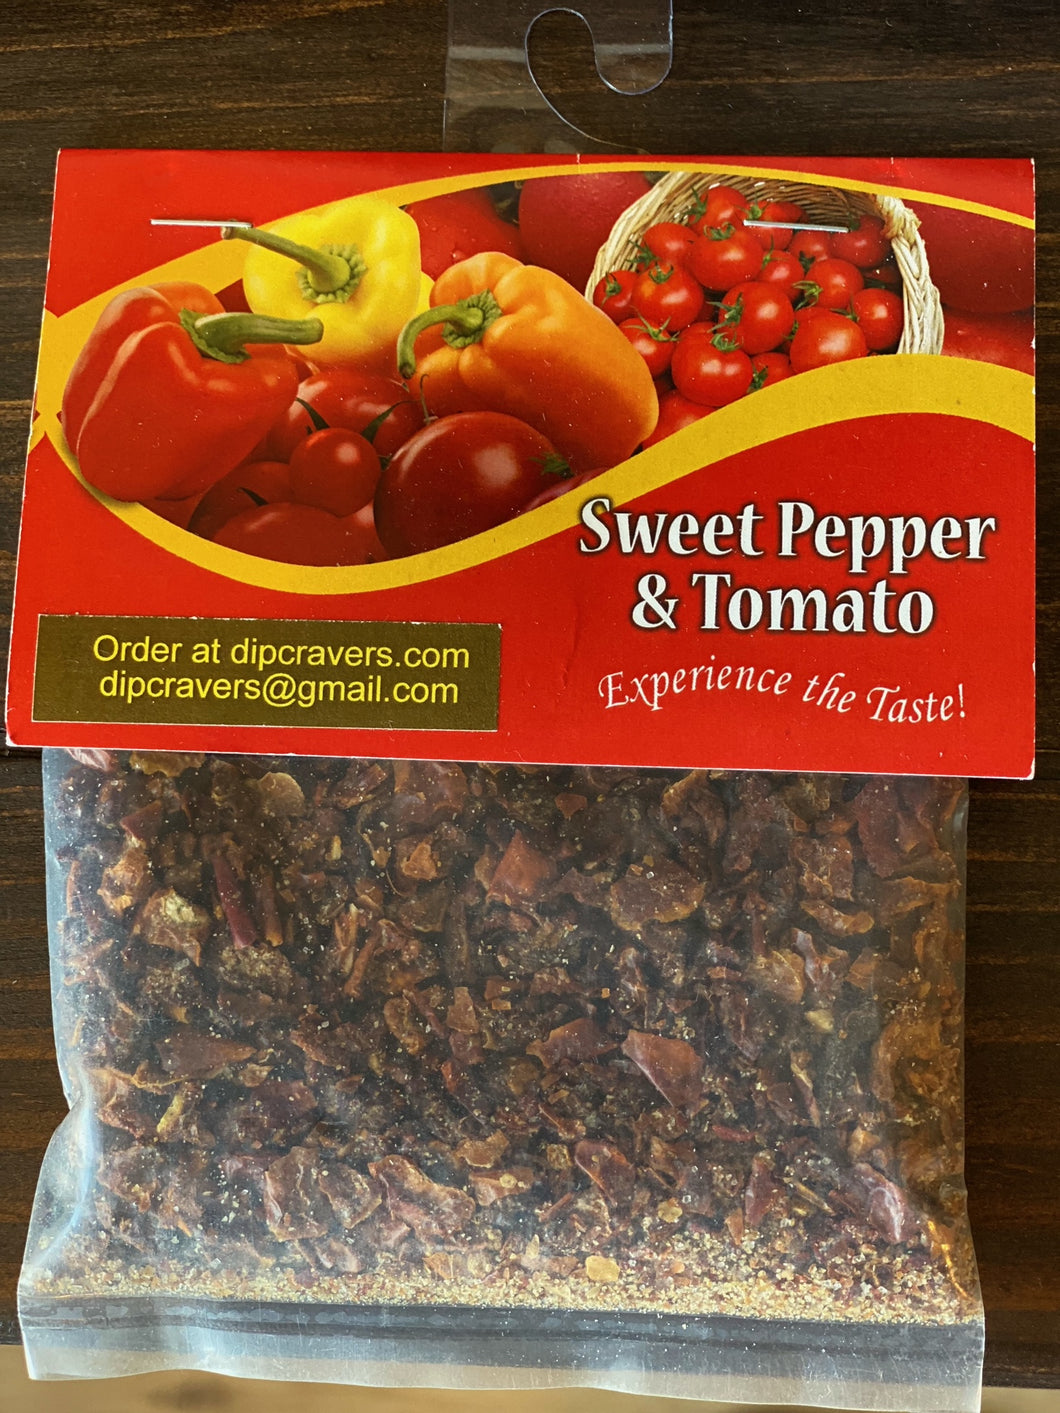 Sweet Pepper & Tomato